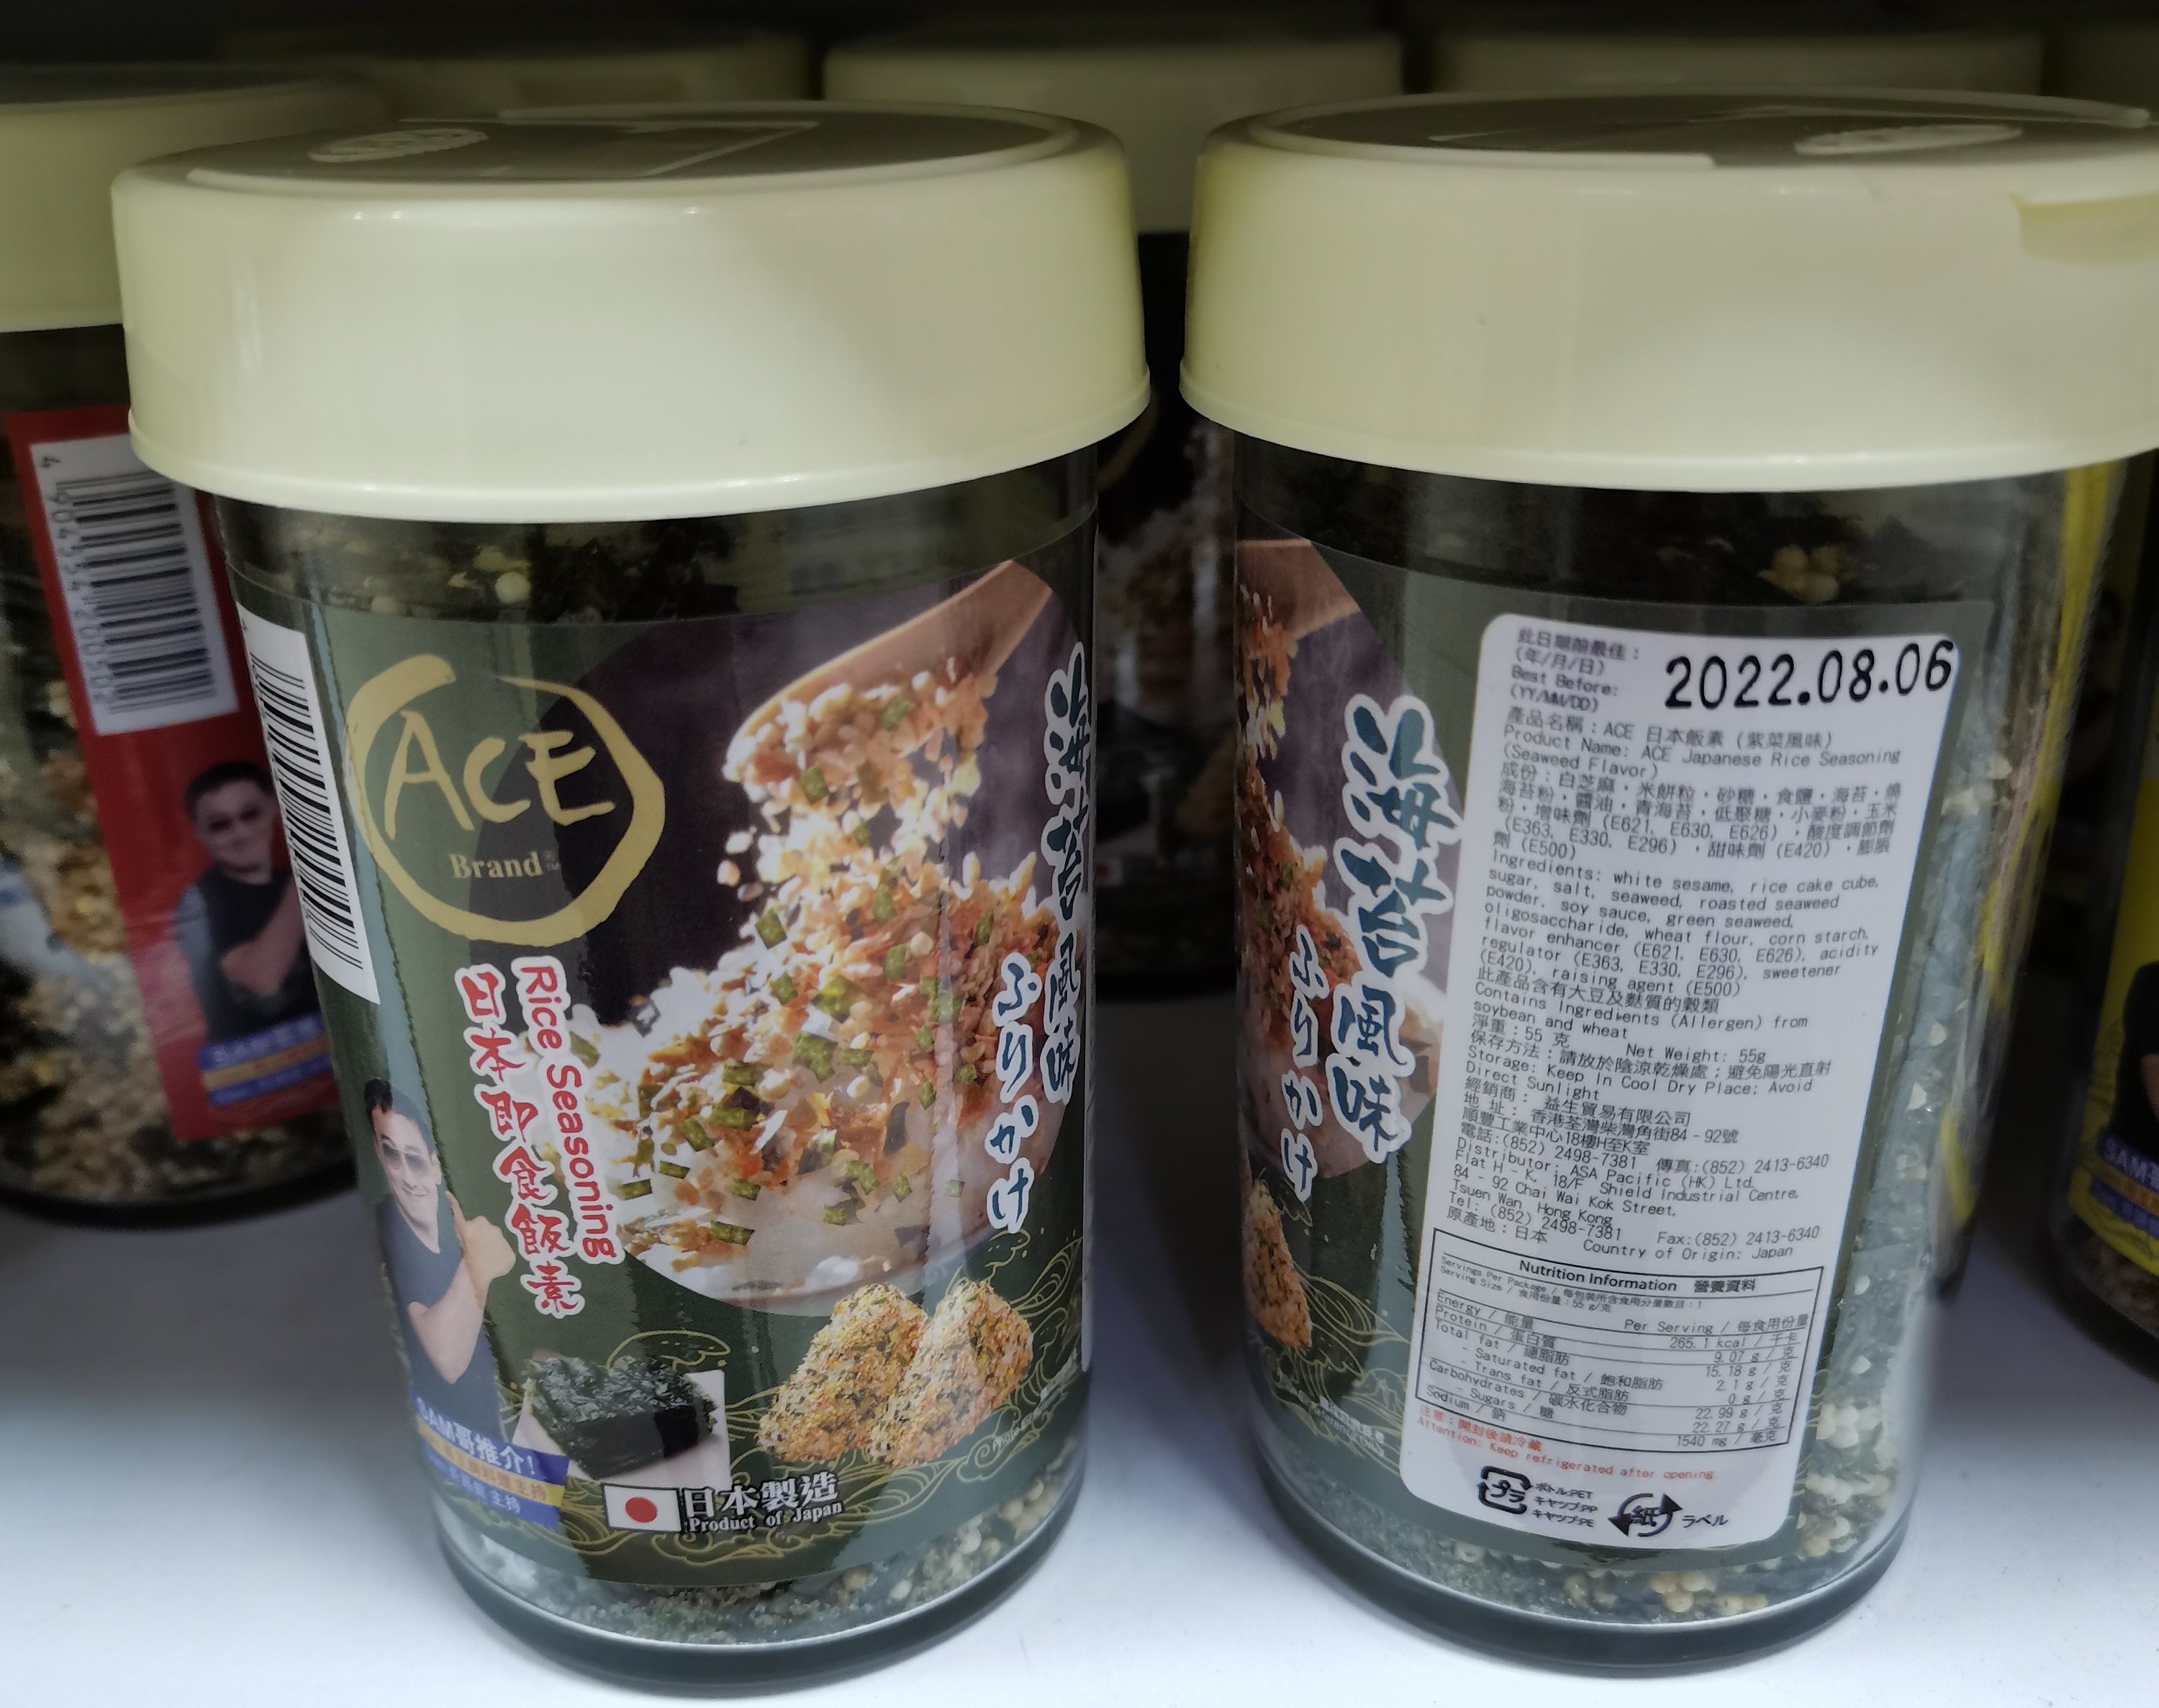 澳門代購干饭好帮手 ACE日本健康即食饭素 海苔风味居家小孩调料